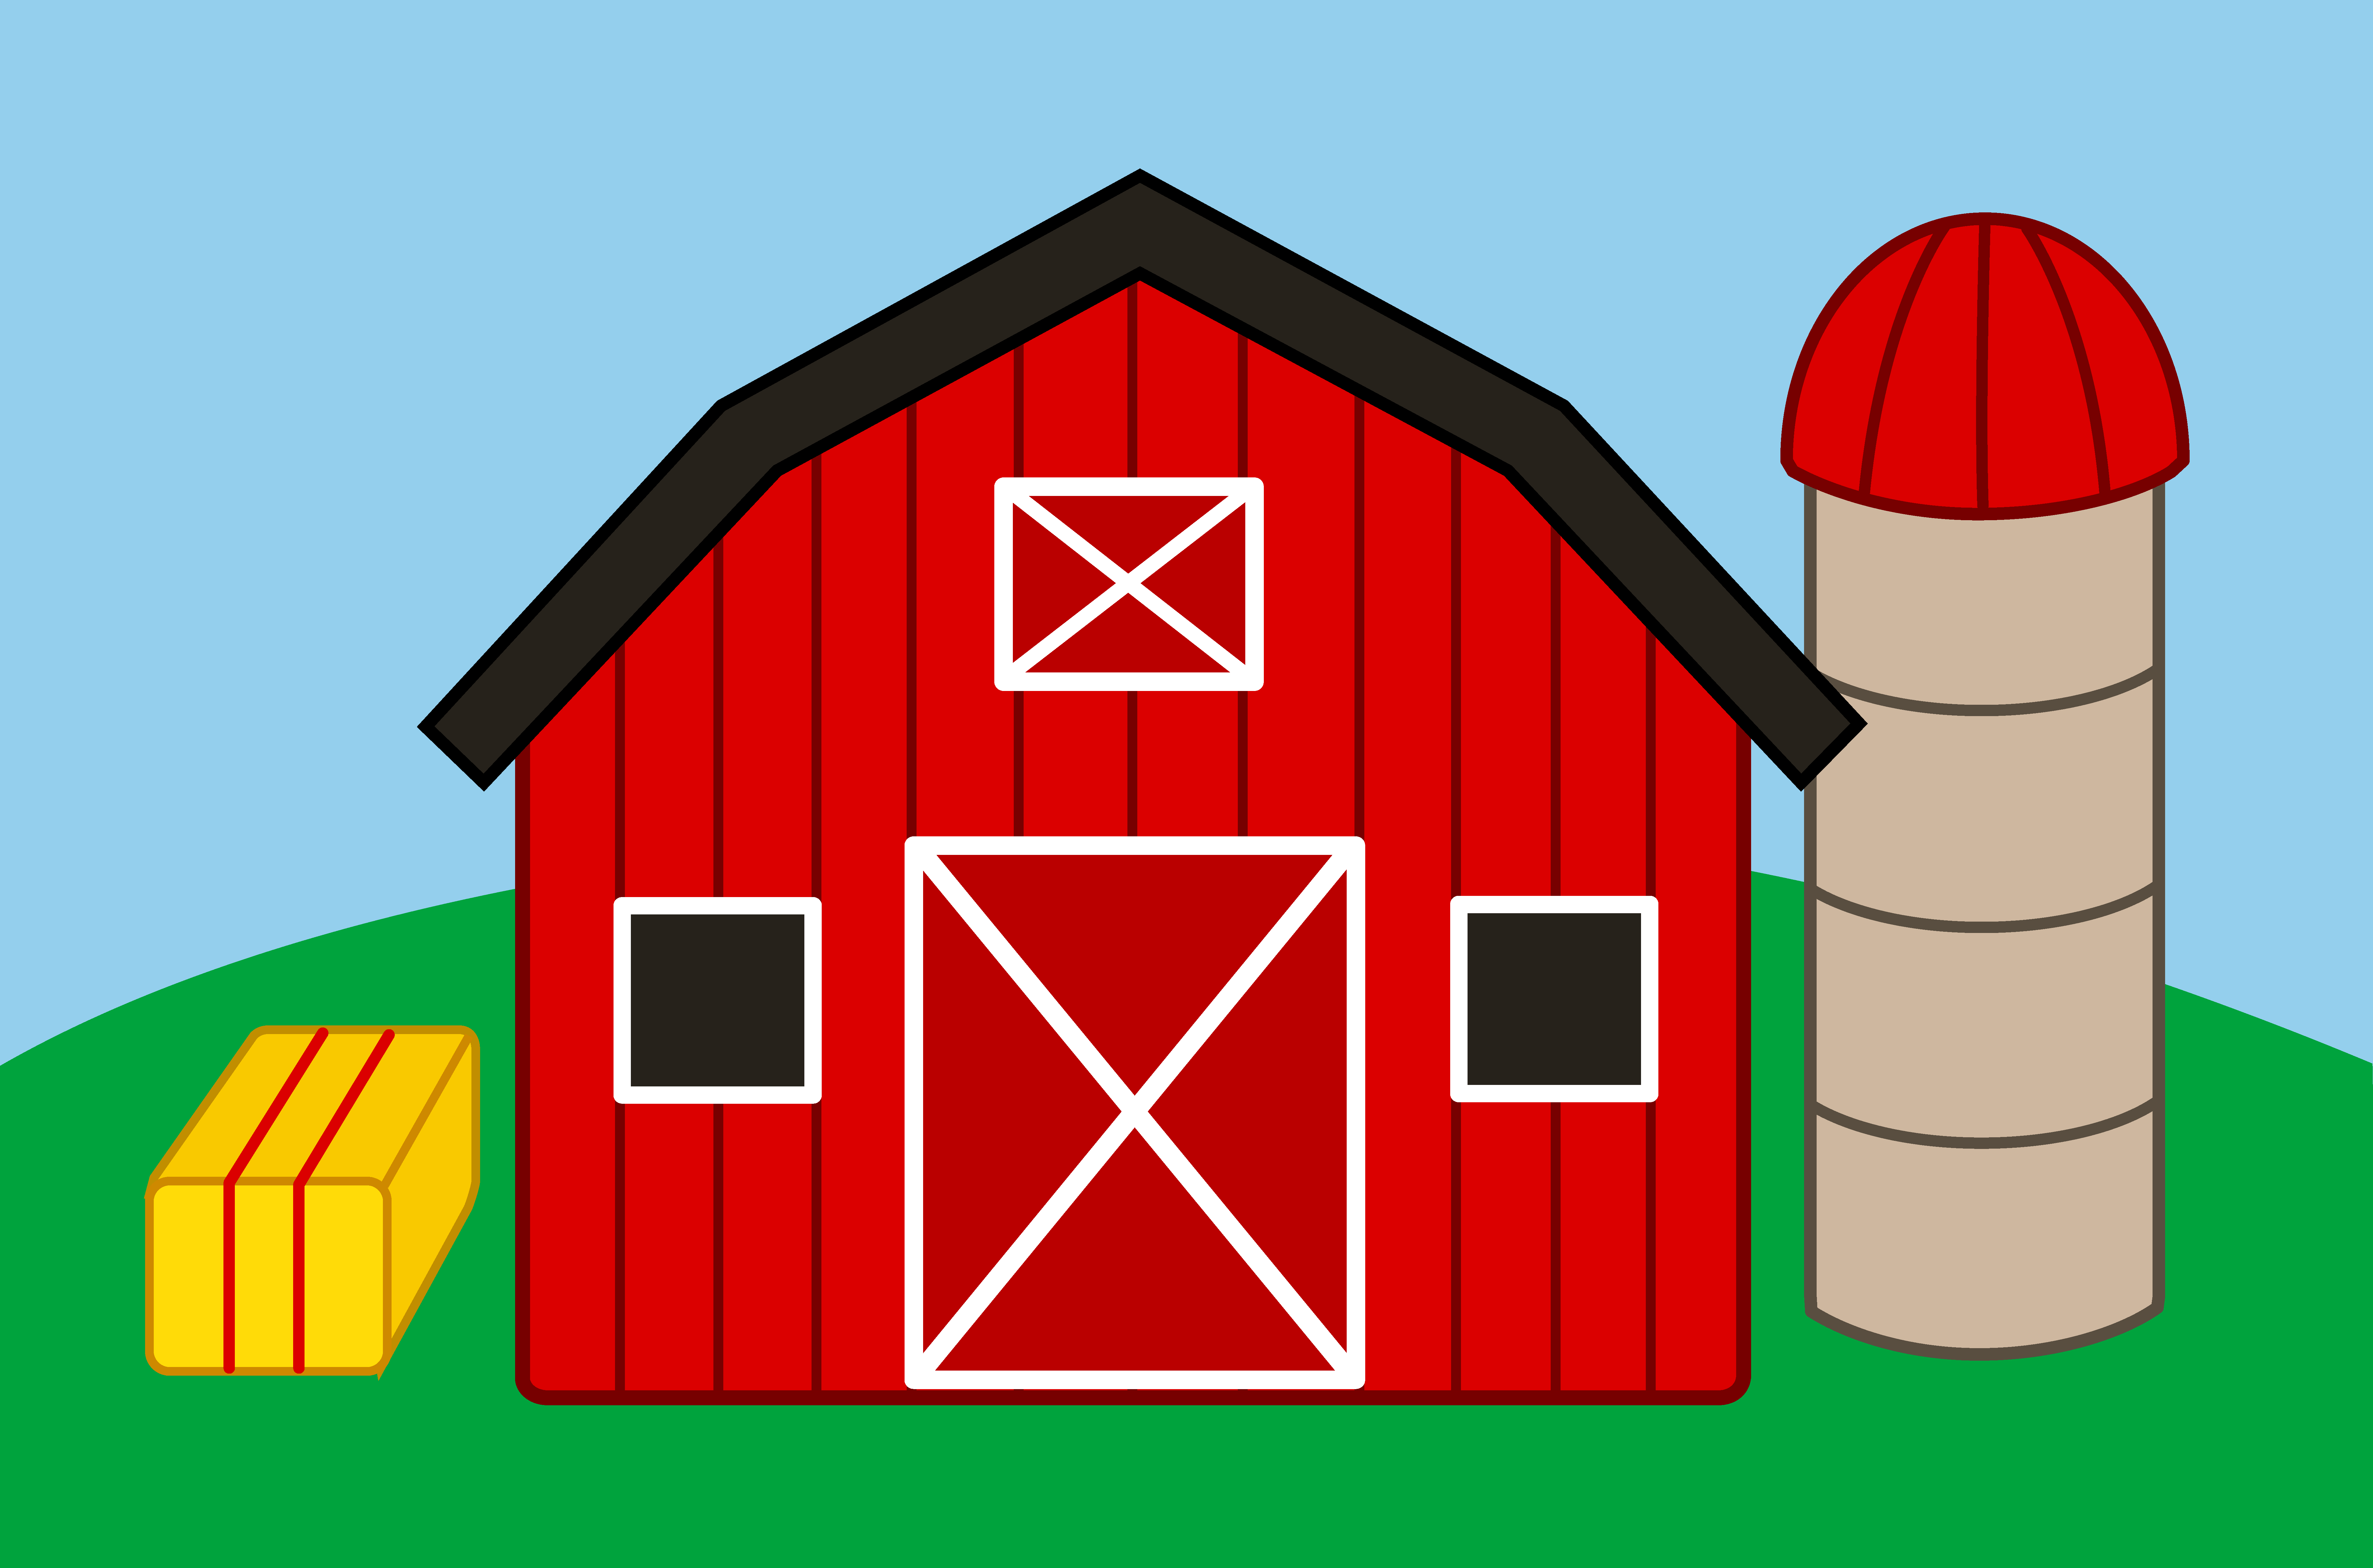 Free Farm Barn Cliparts, Download Free Clip Art, Free Clip.